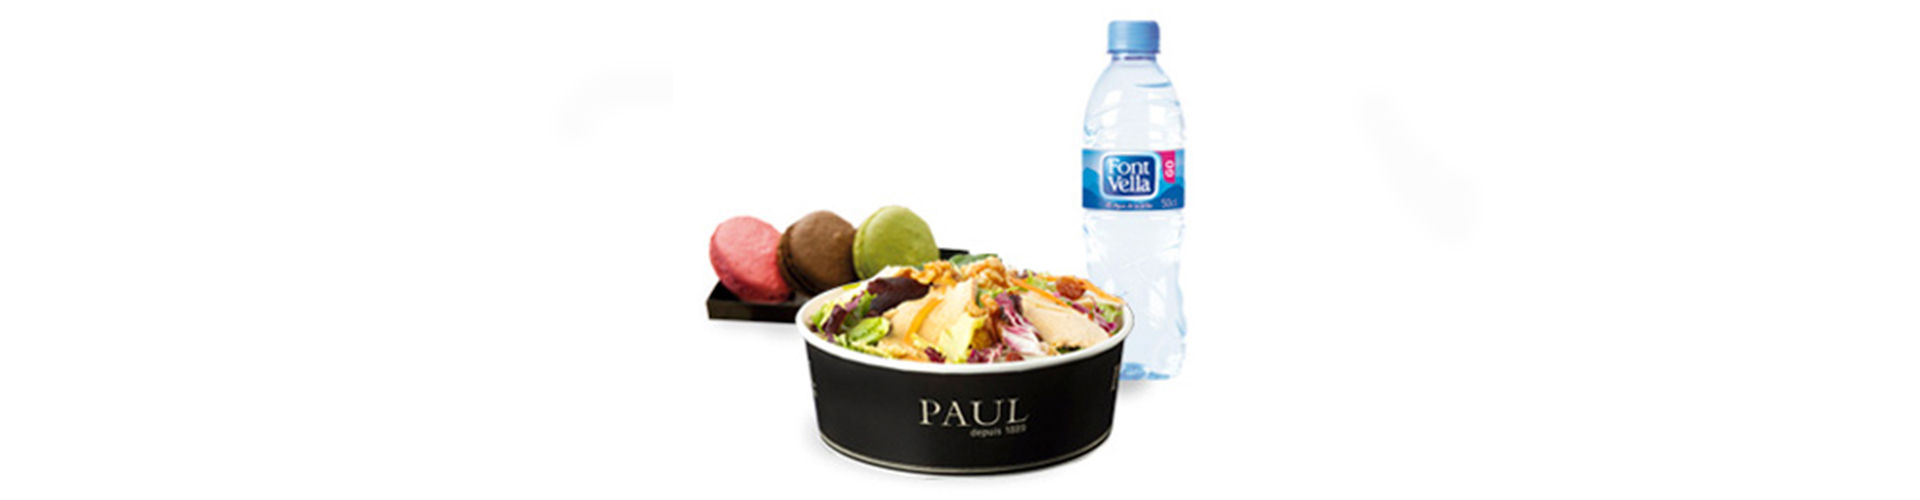 Menu-salad-foodpaulpmitd-40003090